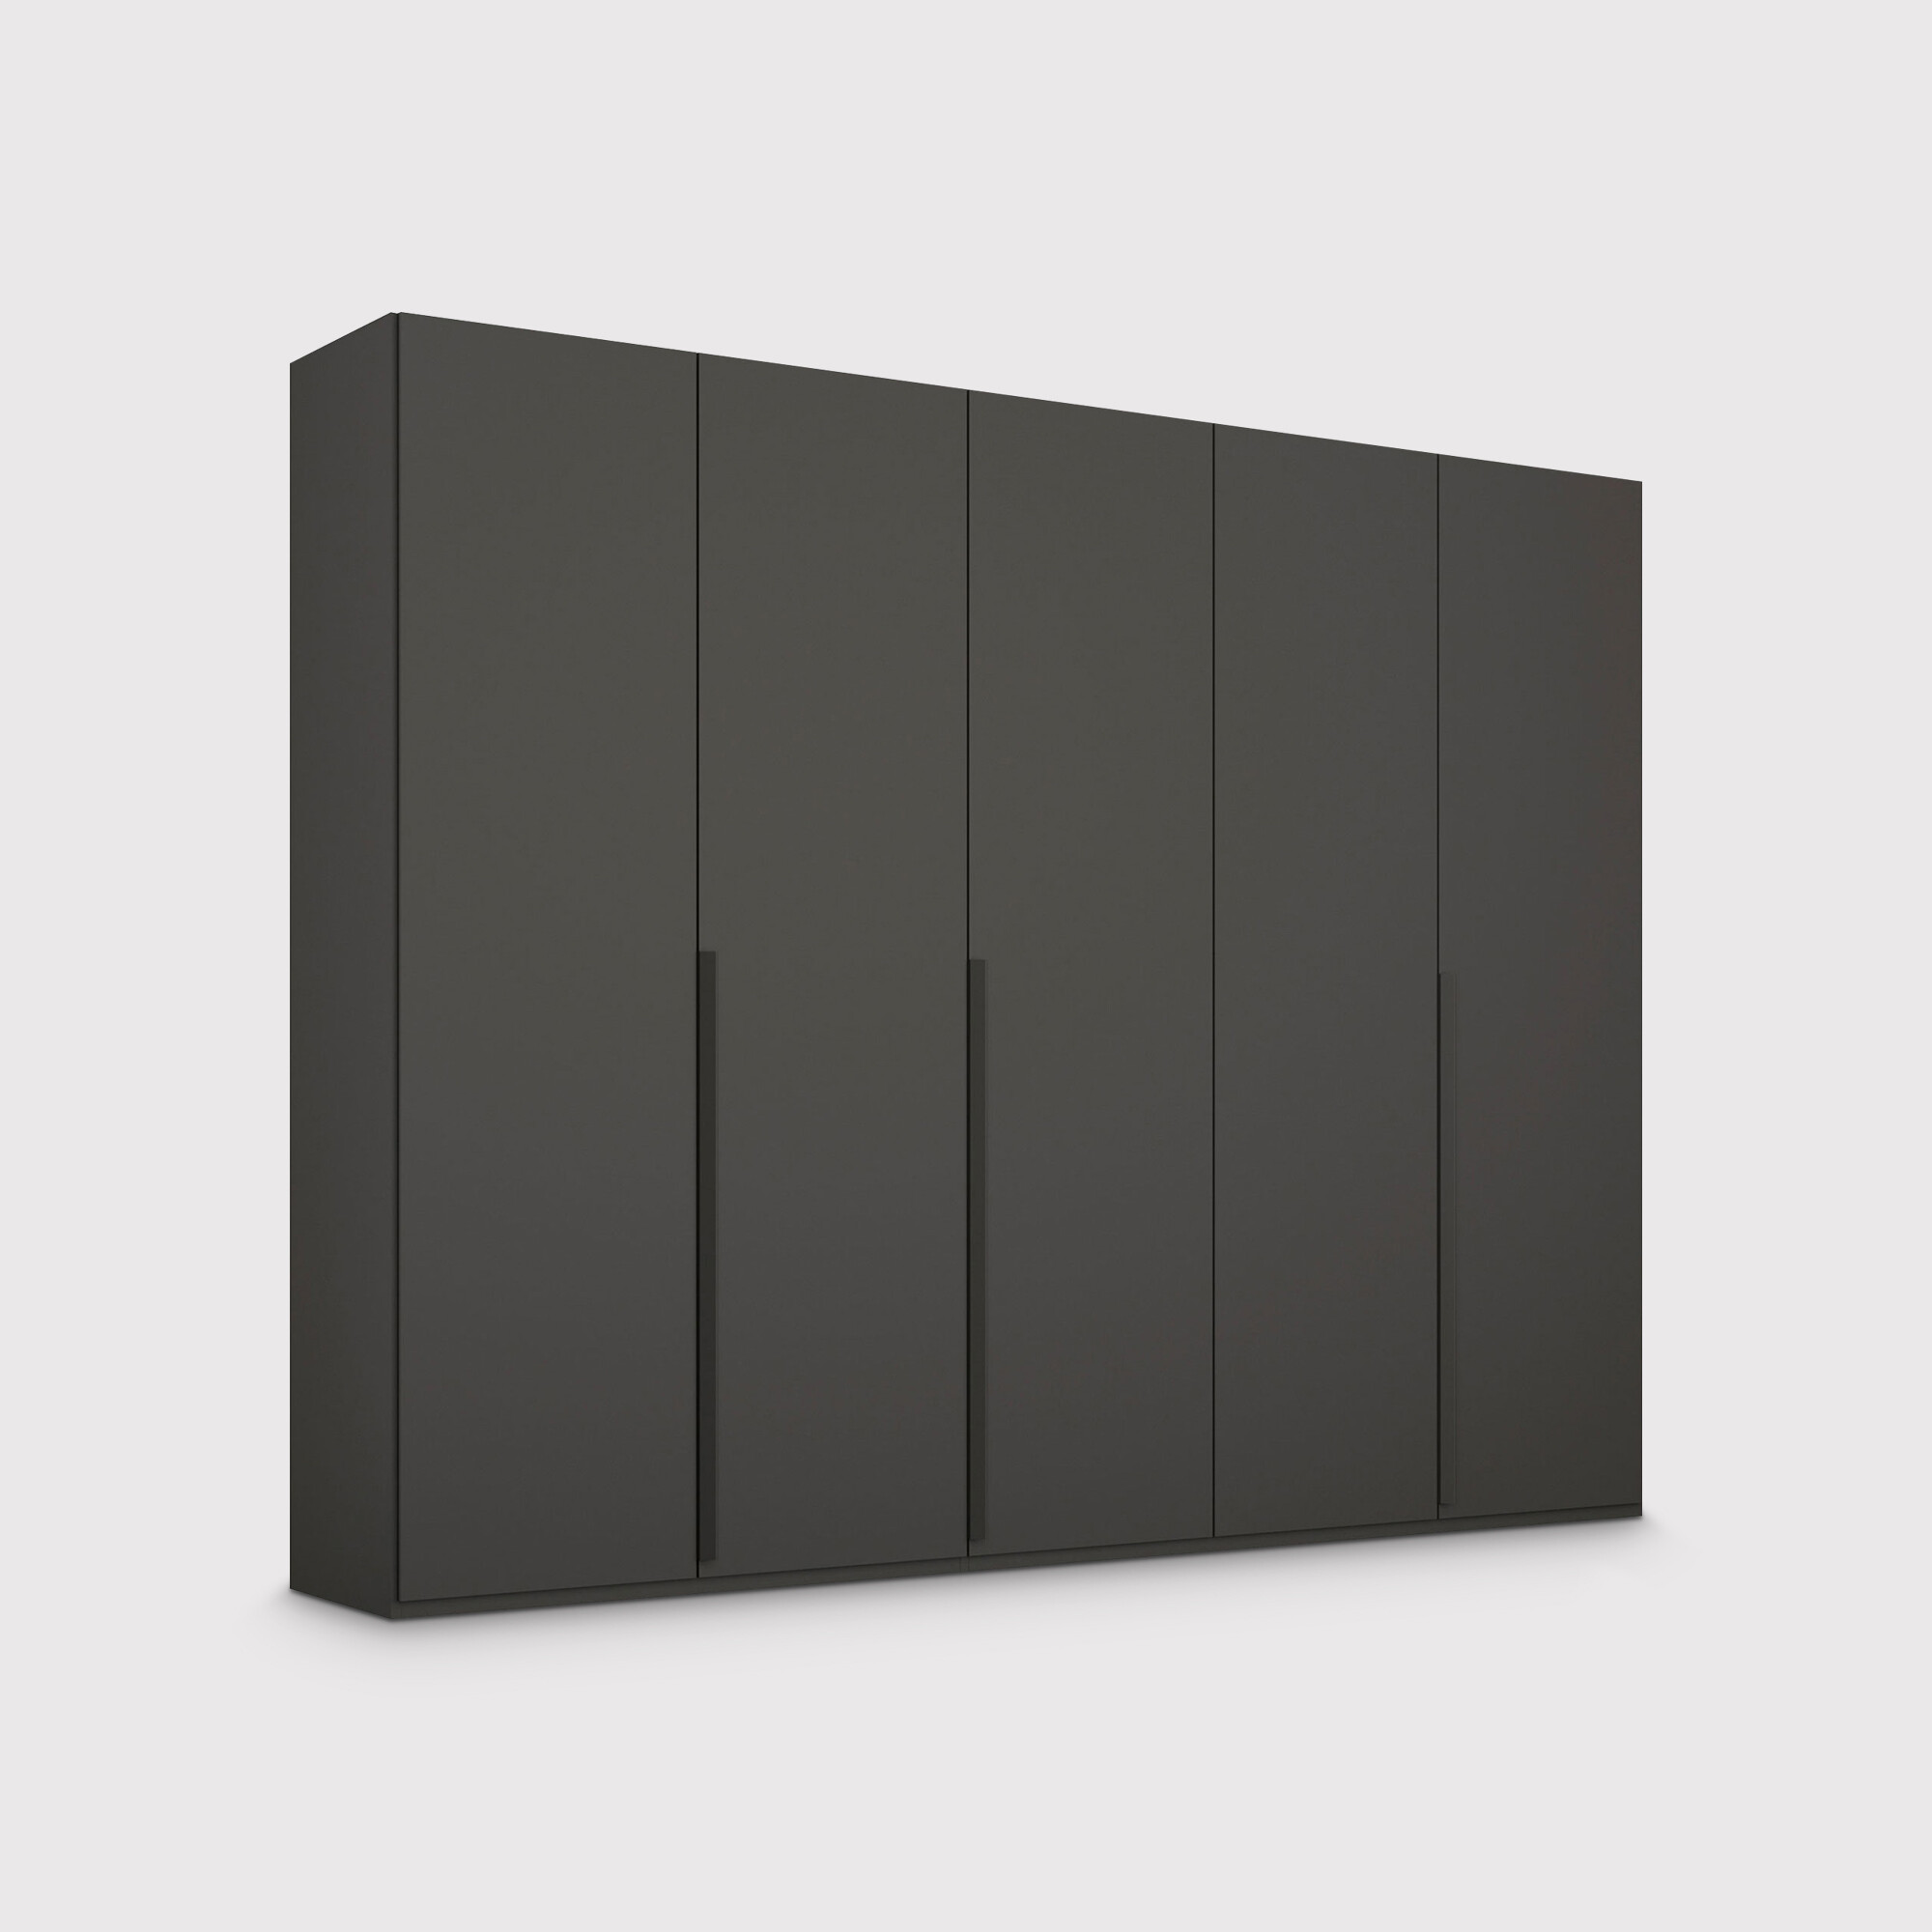 Frans 5 Door Wardrobe 251cm, Black | Barker & Stonehouse